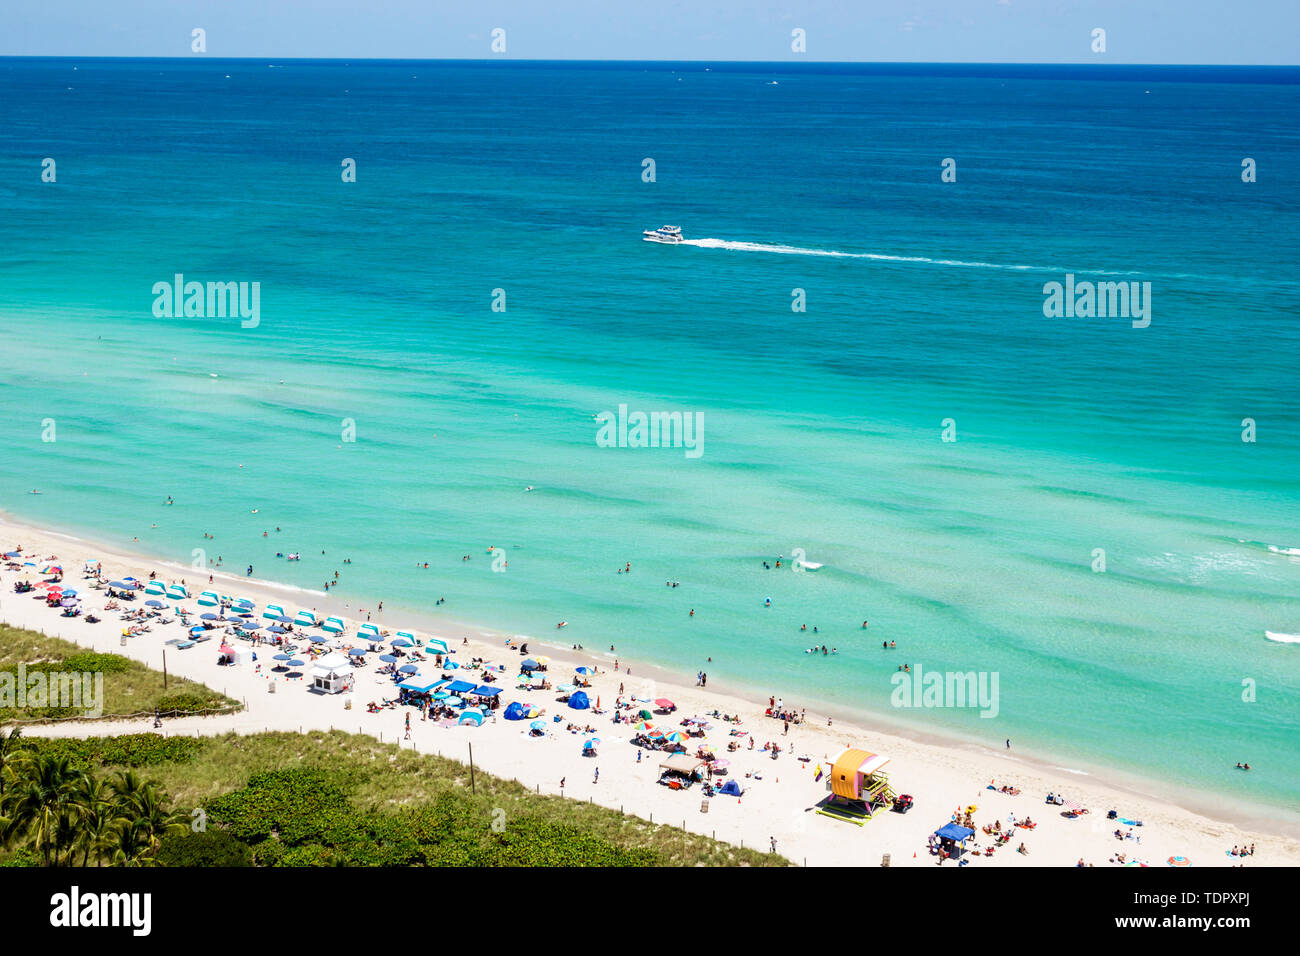 Miami Beach Florida, North Beach, Atlantischer Ozean, Sonnenanbeter, öffentlicher Strand, Sand, Sonnenschirme, Horizont, Blick von oben, klares blaues Wasser, Sandbank, Dünen, Boot, FL19 Stockfoto